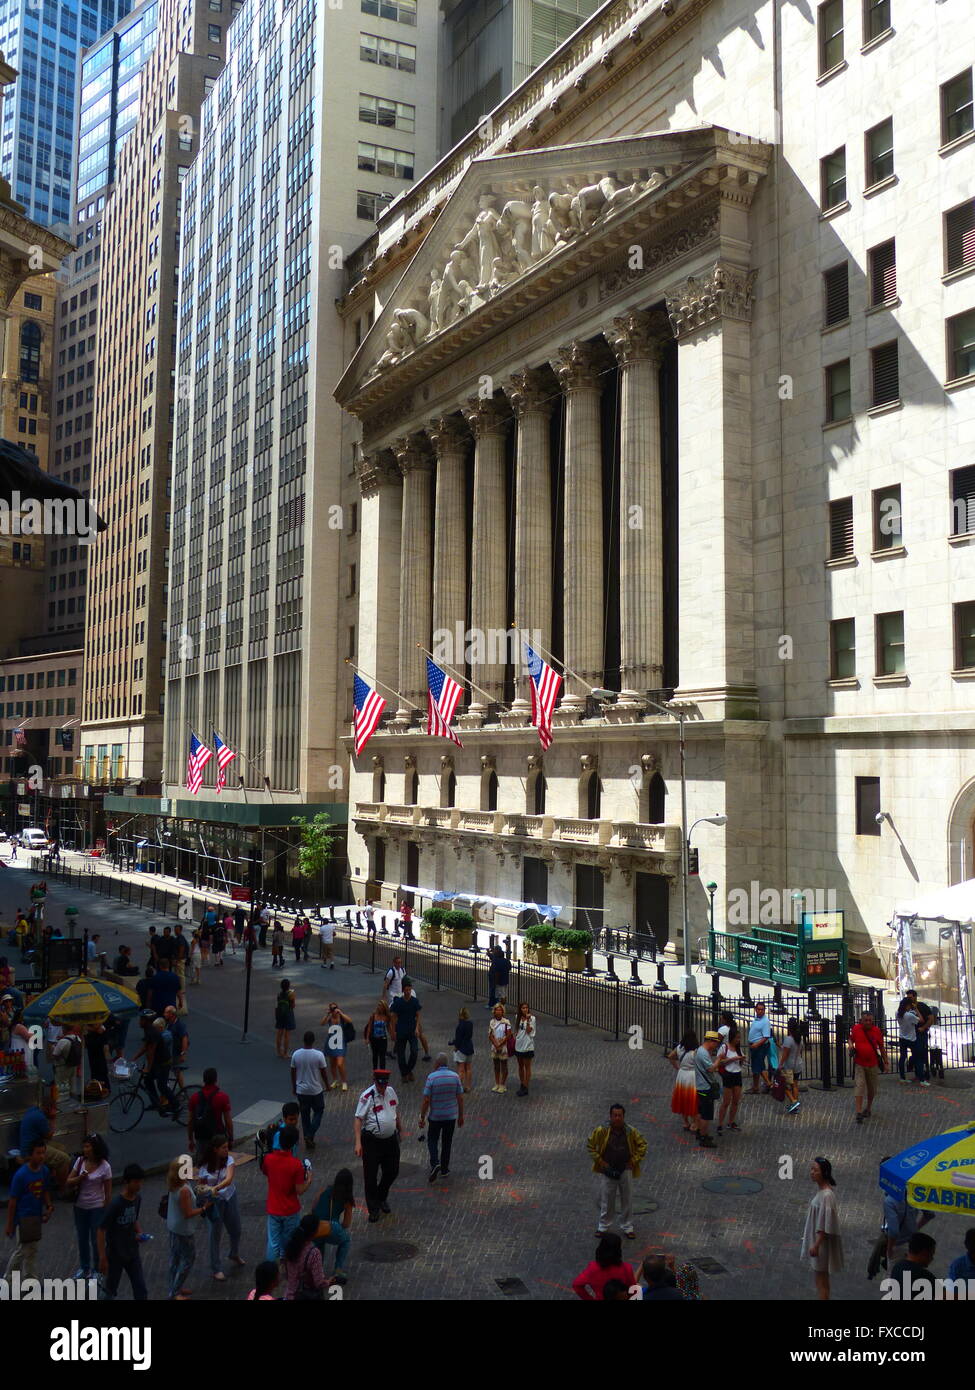 New York Stock Exchange Stock Photo